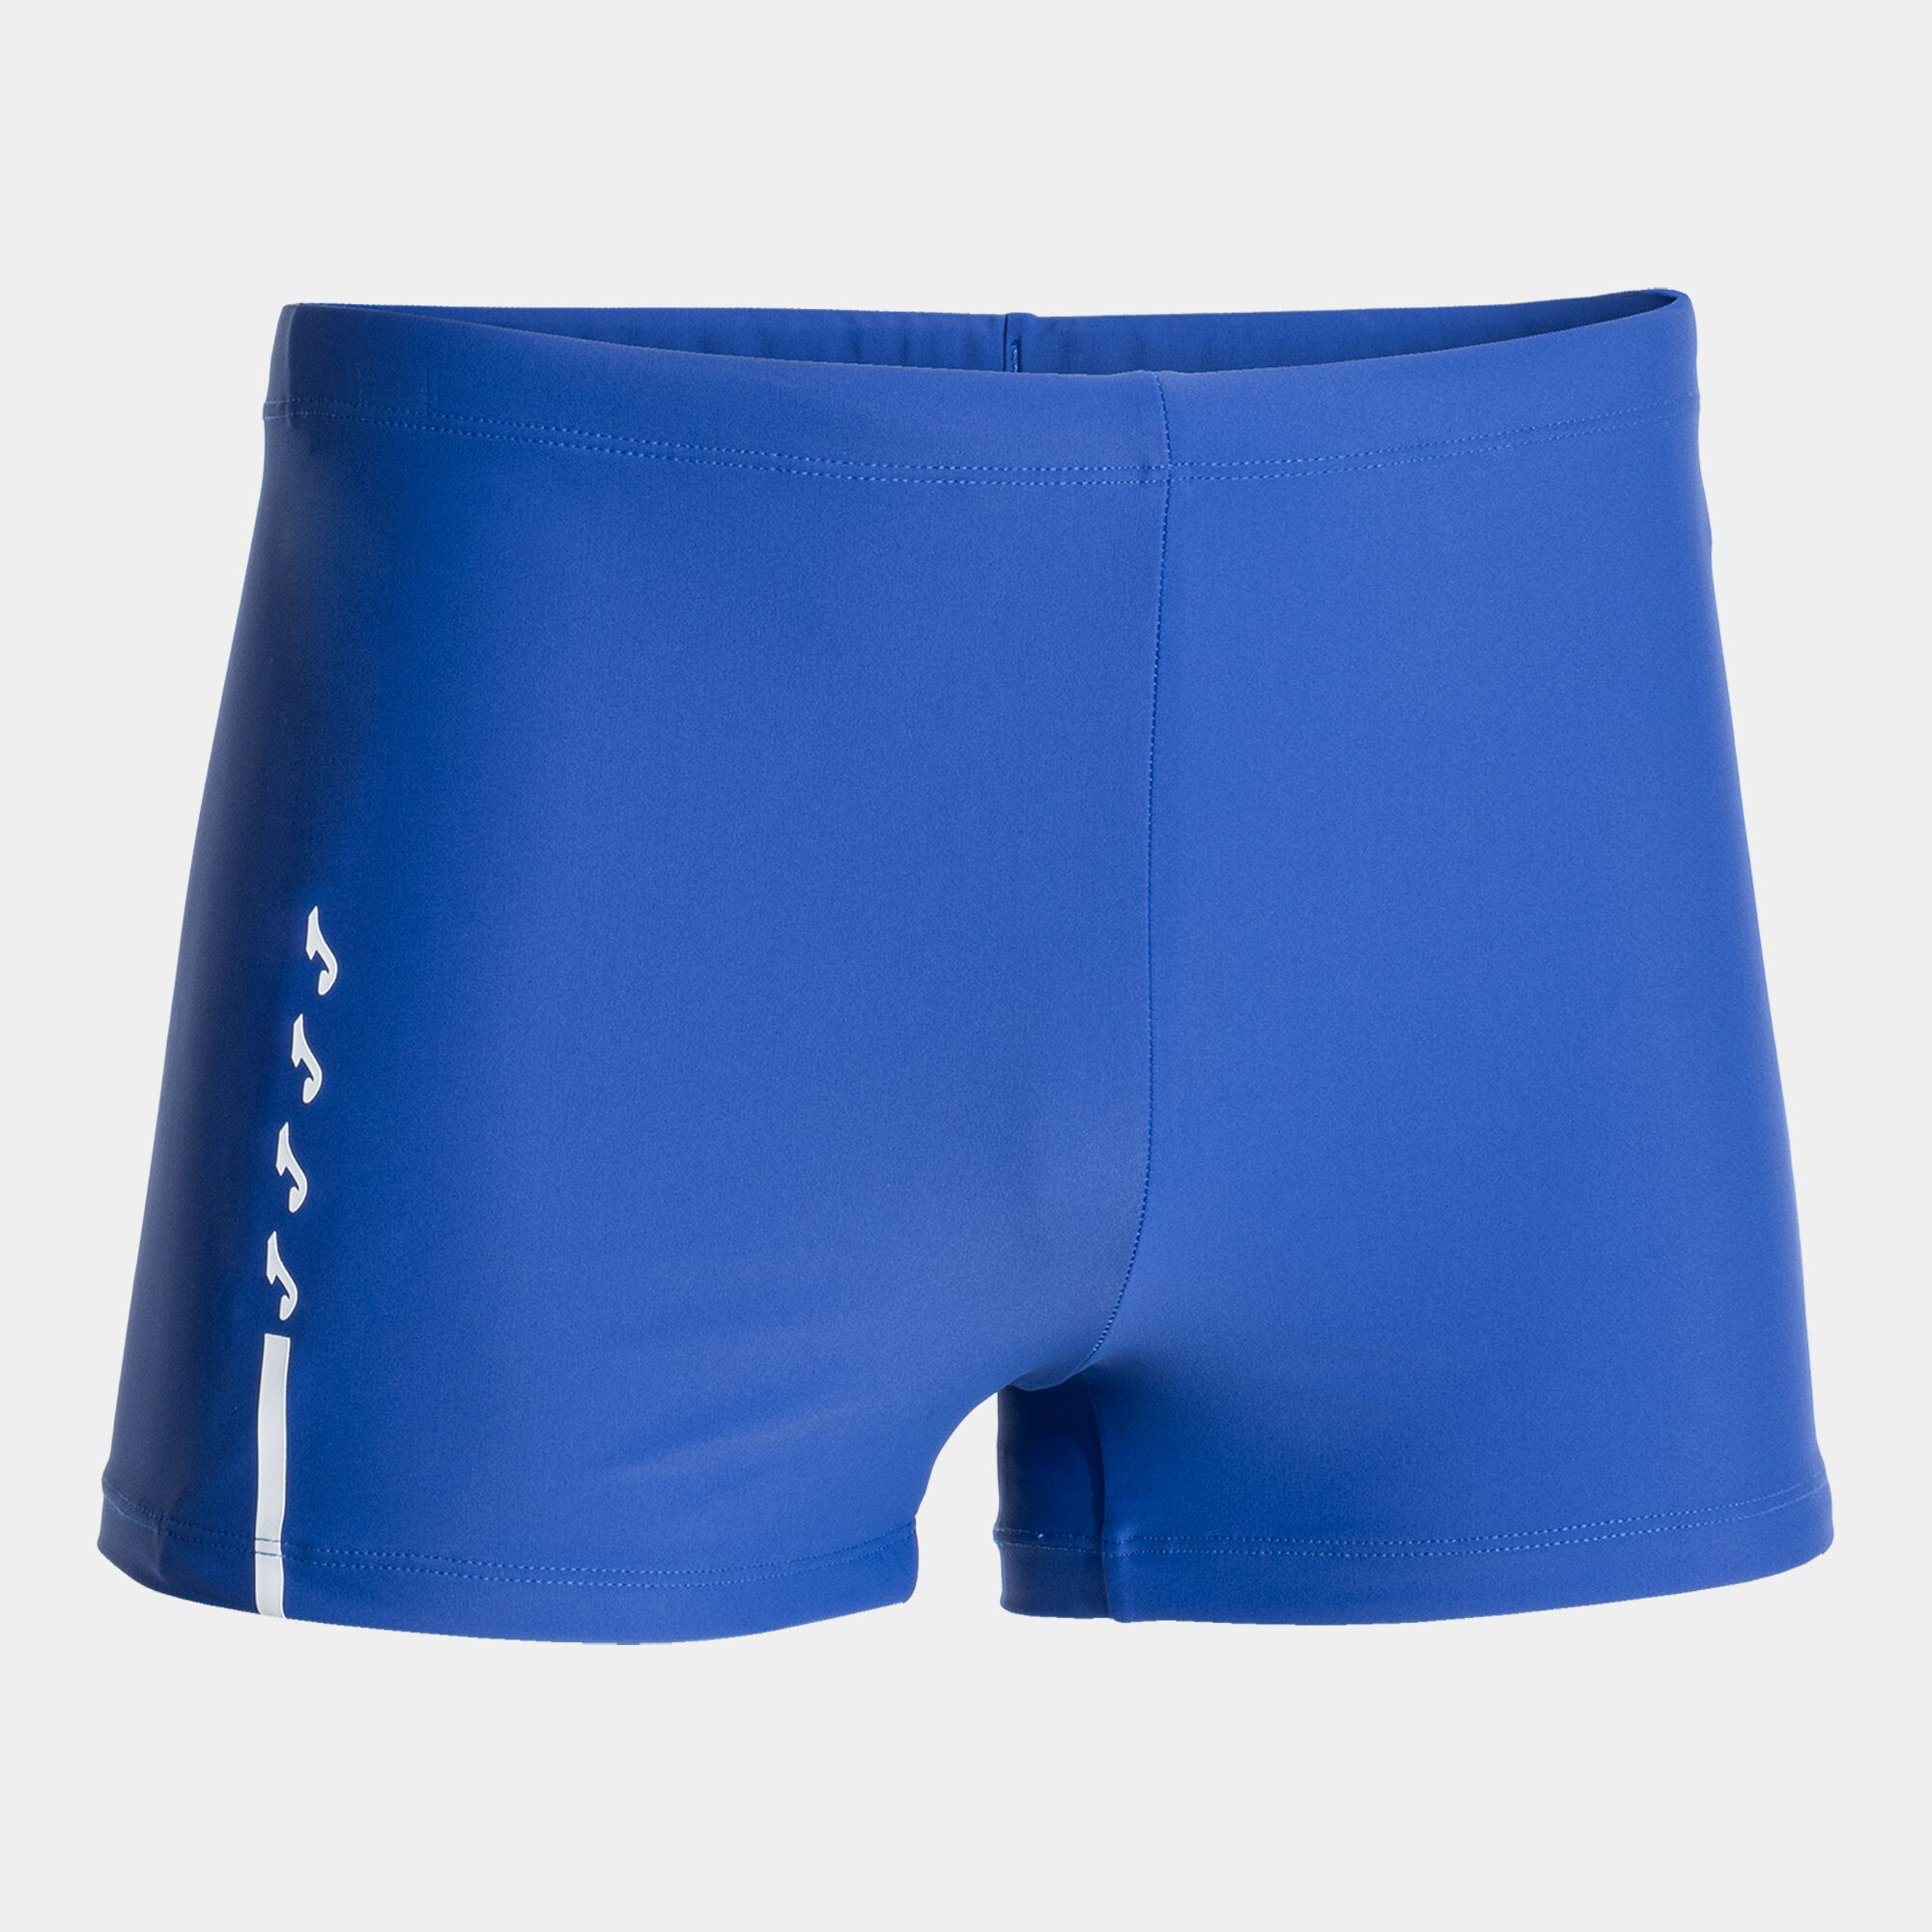 Swimming shorts man Shark III royal blue